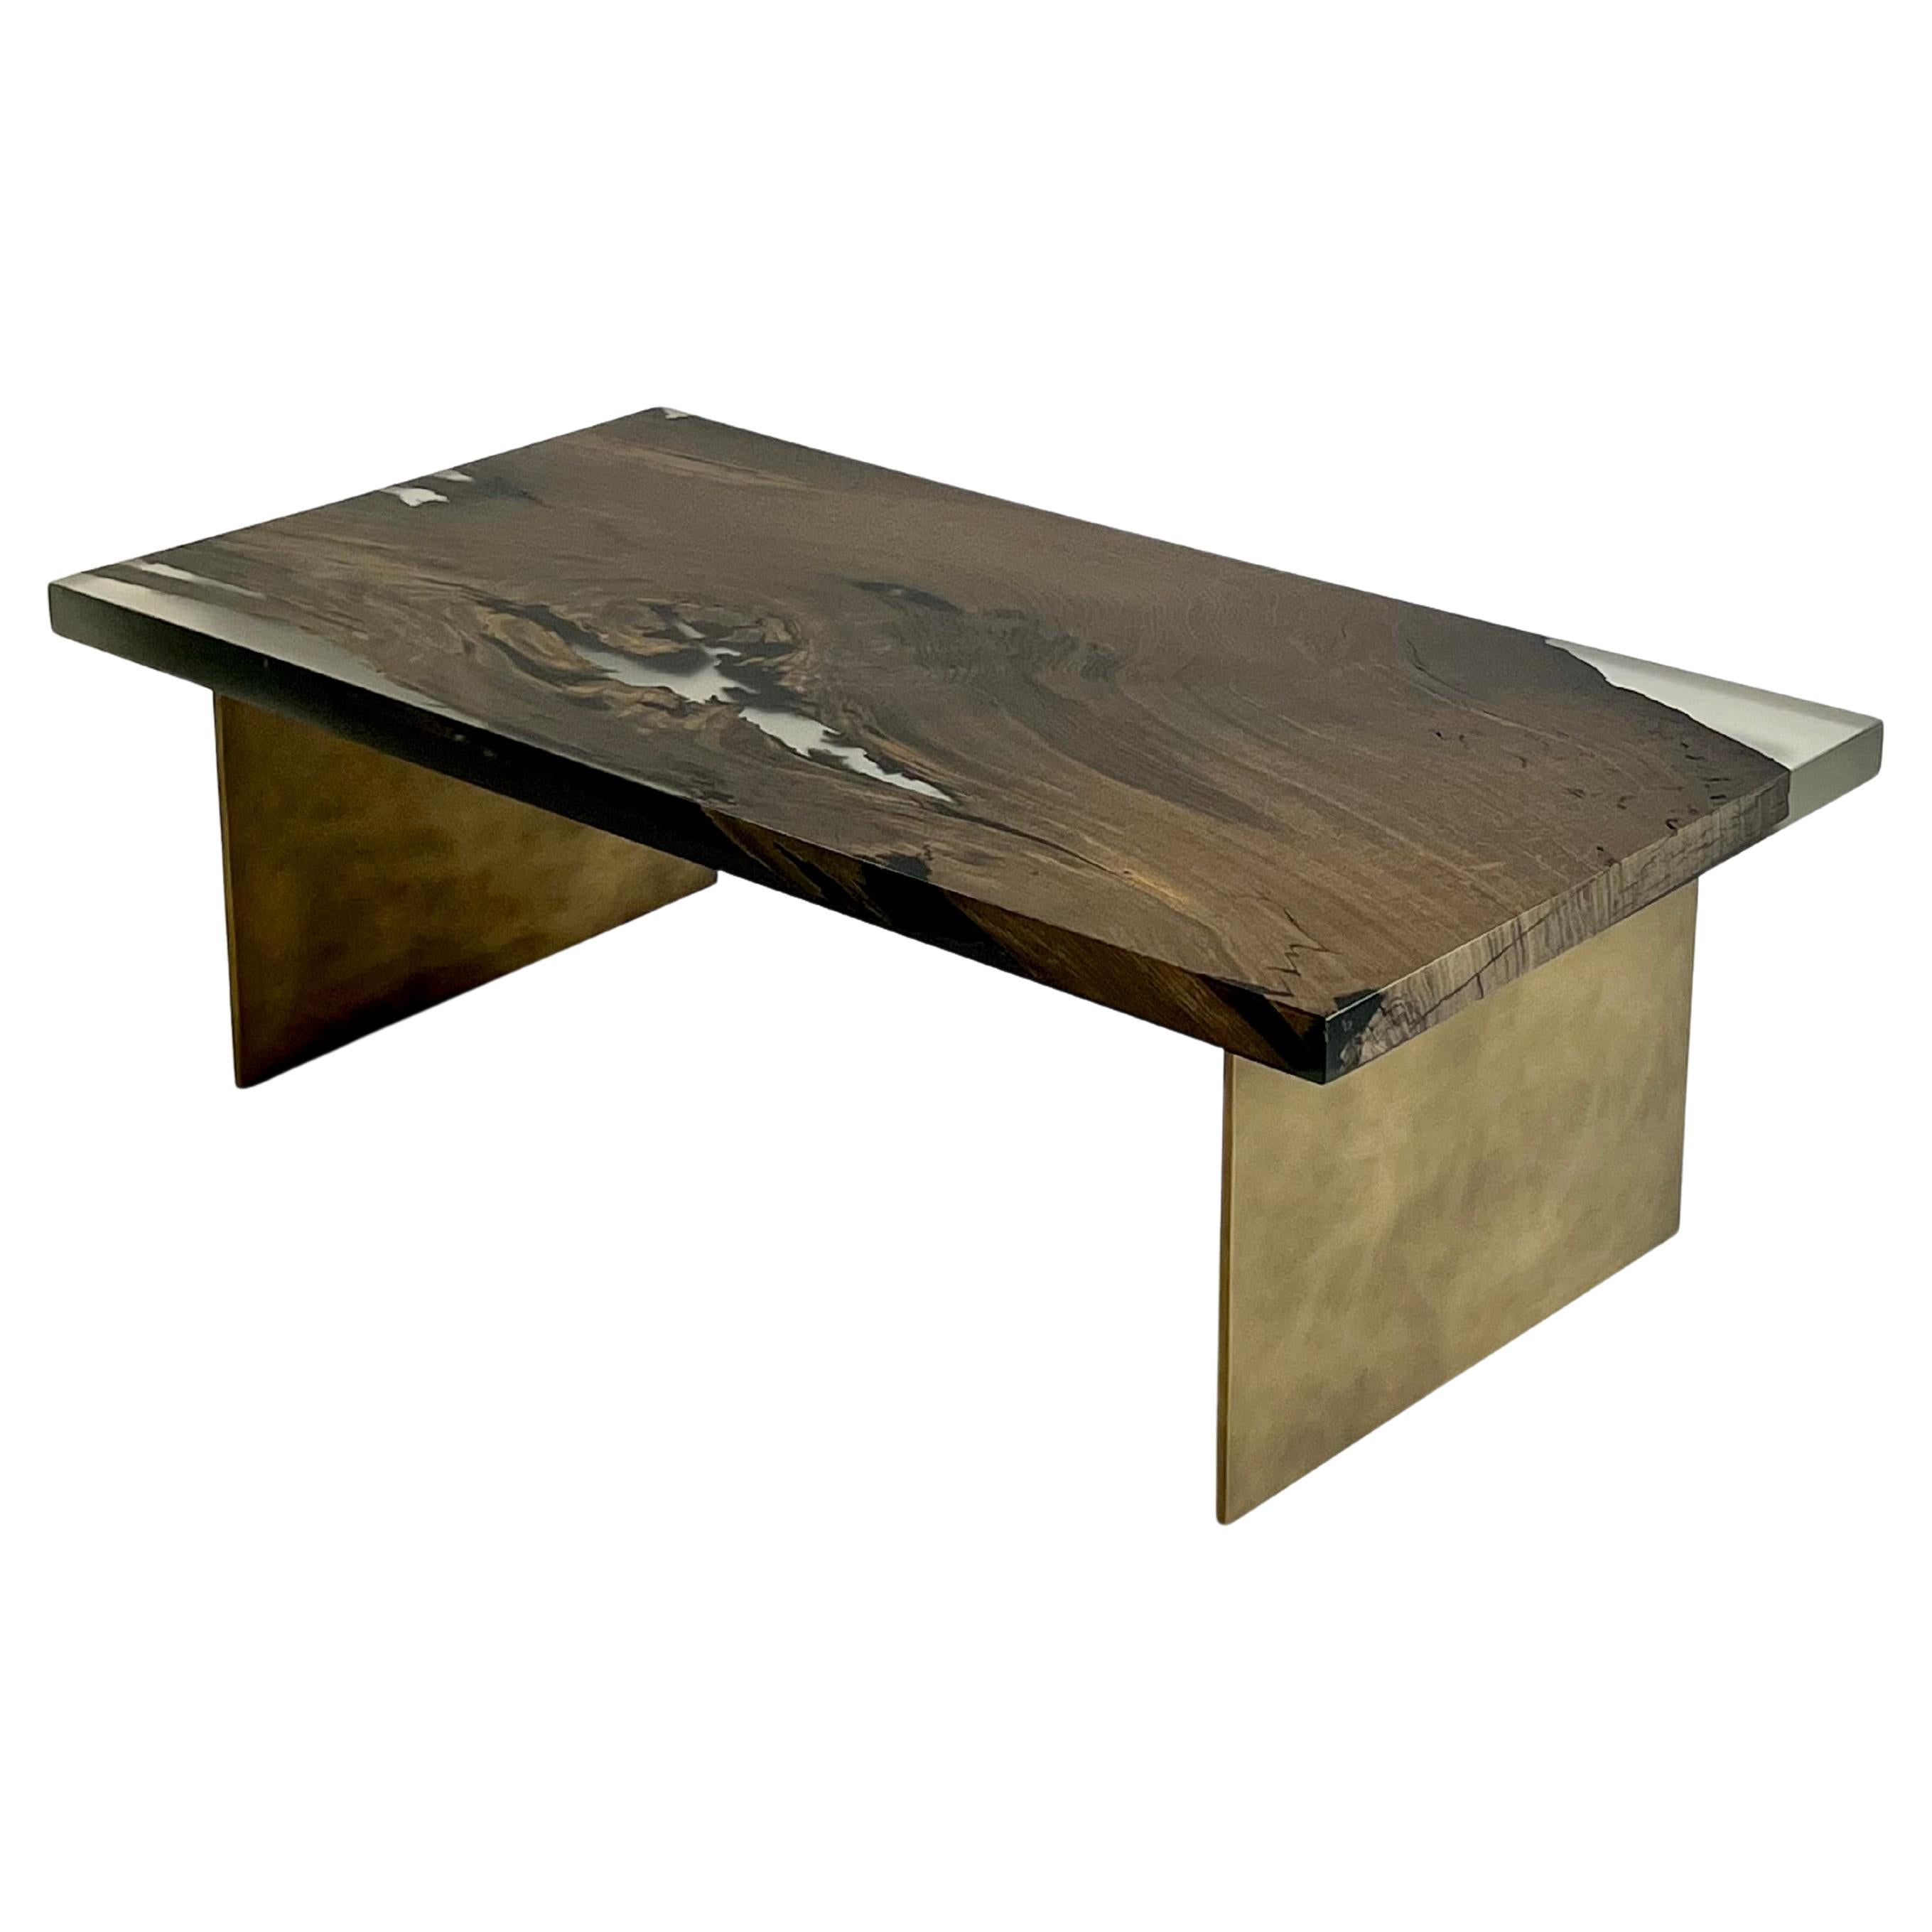 Table basse en bois, fabriquée à la main